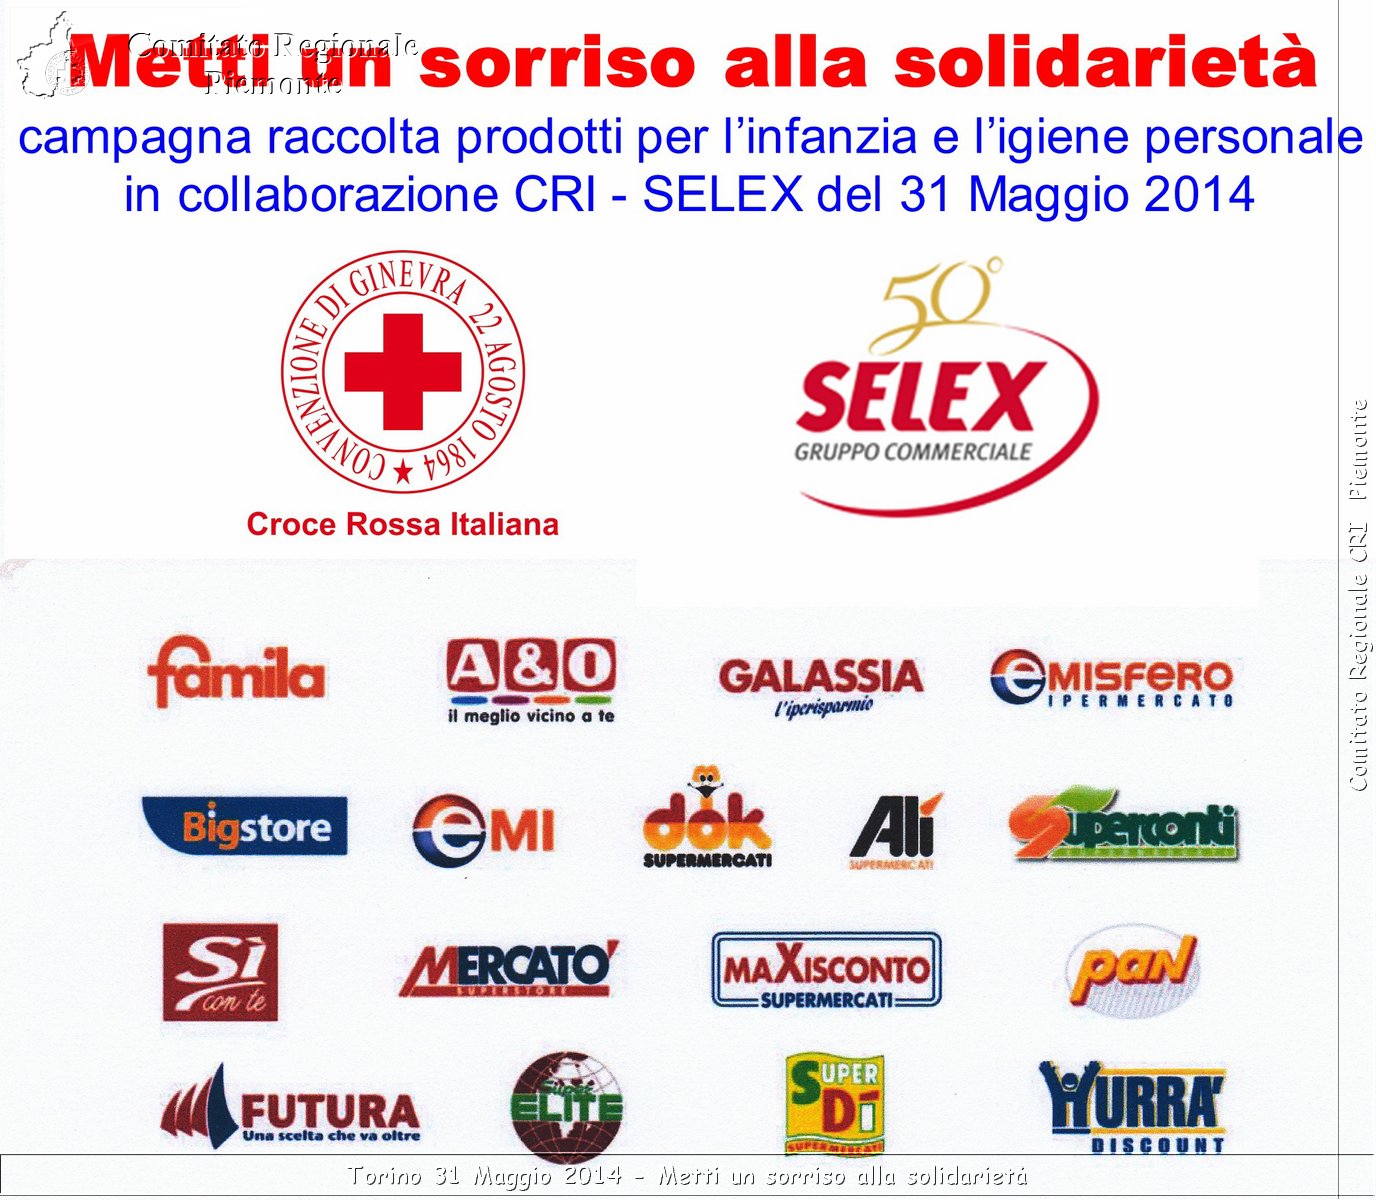 Torino 31 Maggio 2014 - Metti un sorriso alla solidariet - Comitato Regionale del Piemonte